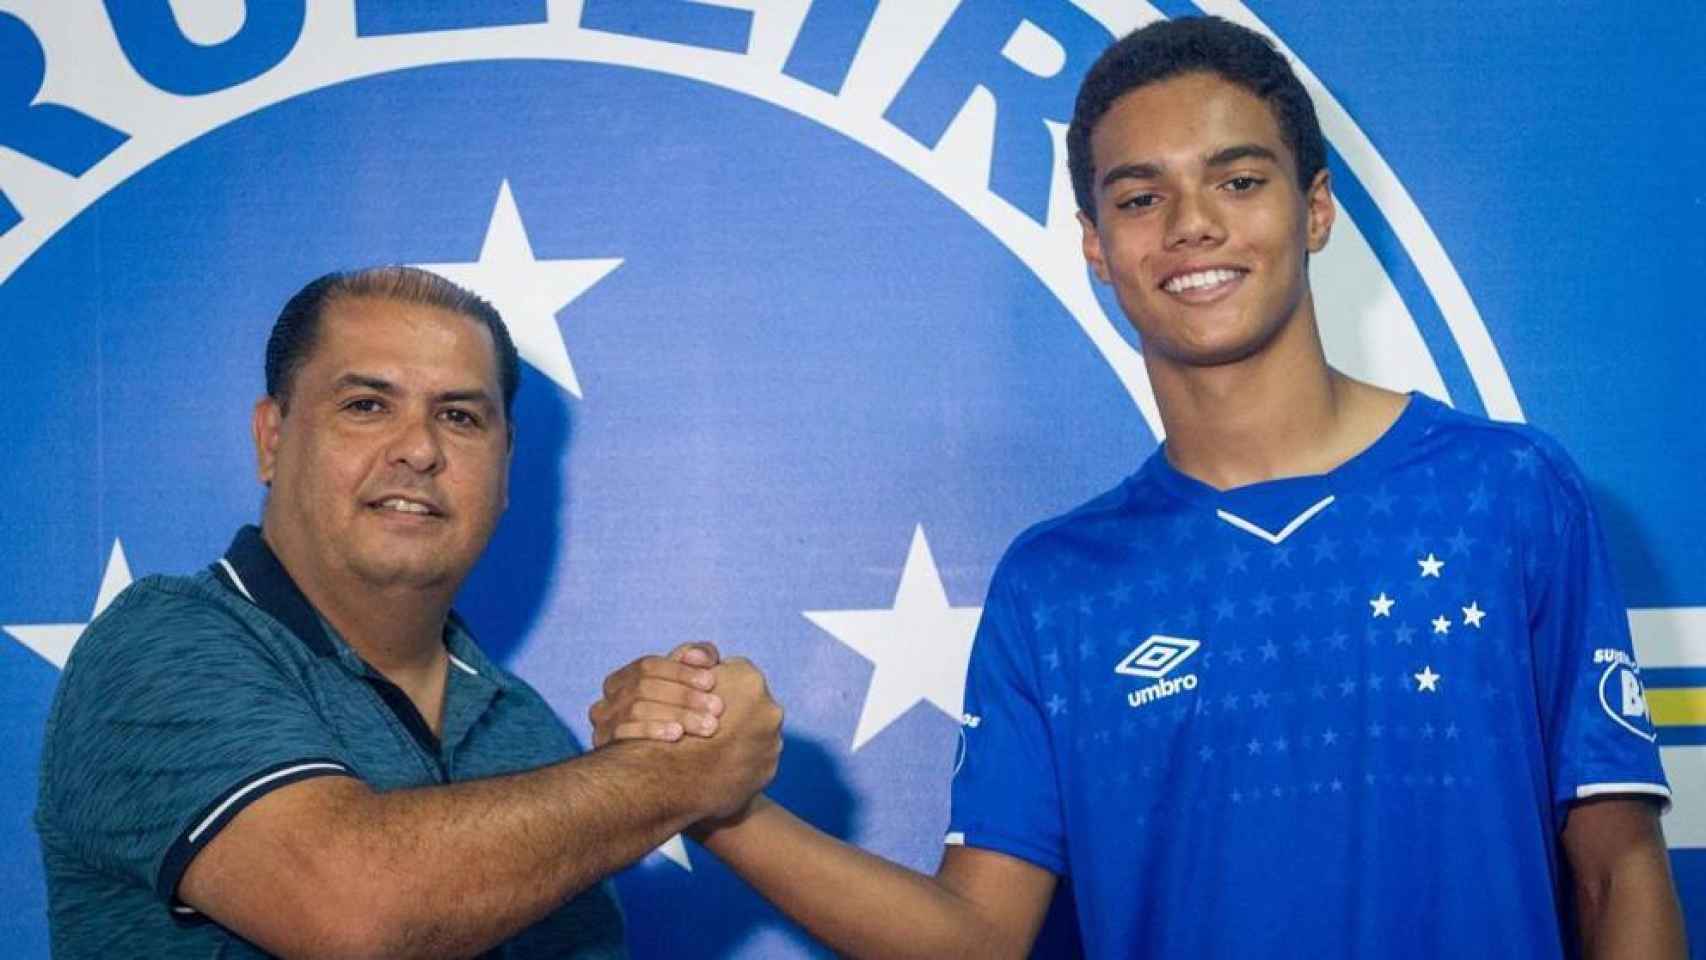 El hijo de Ronaldinho posando con la camiseta del Cruzeiro. Foto: cruzeiro.com.br